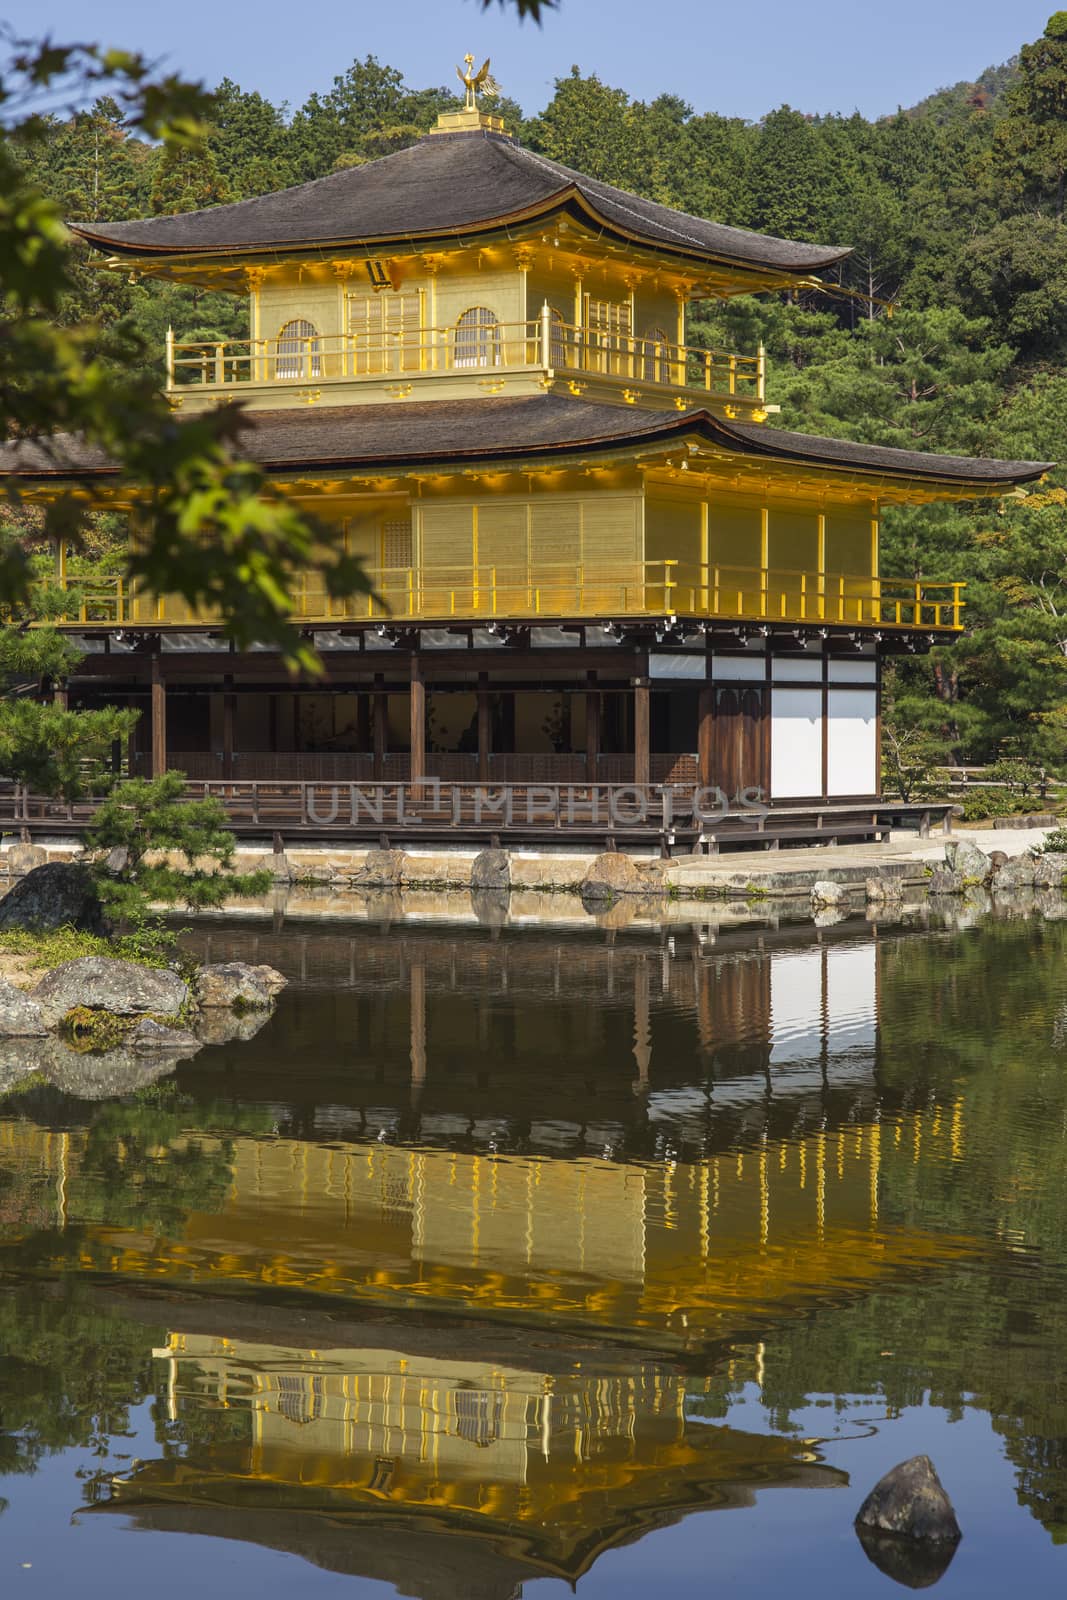 Kinkakuji the golden pavillion. Kyoto. Japan by 2nix